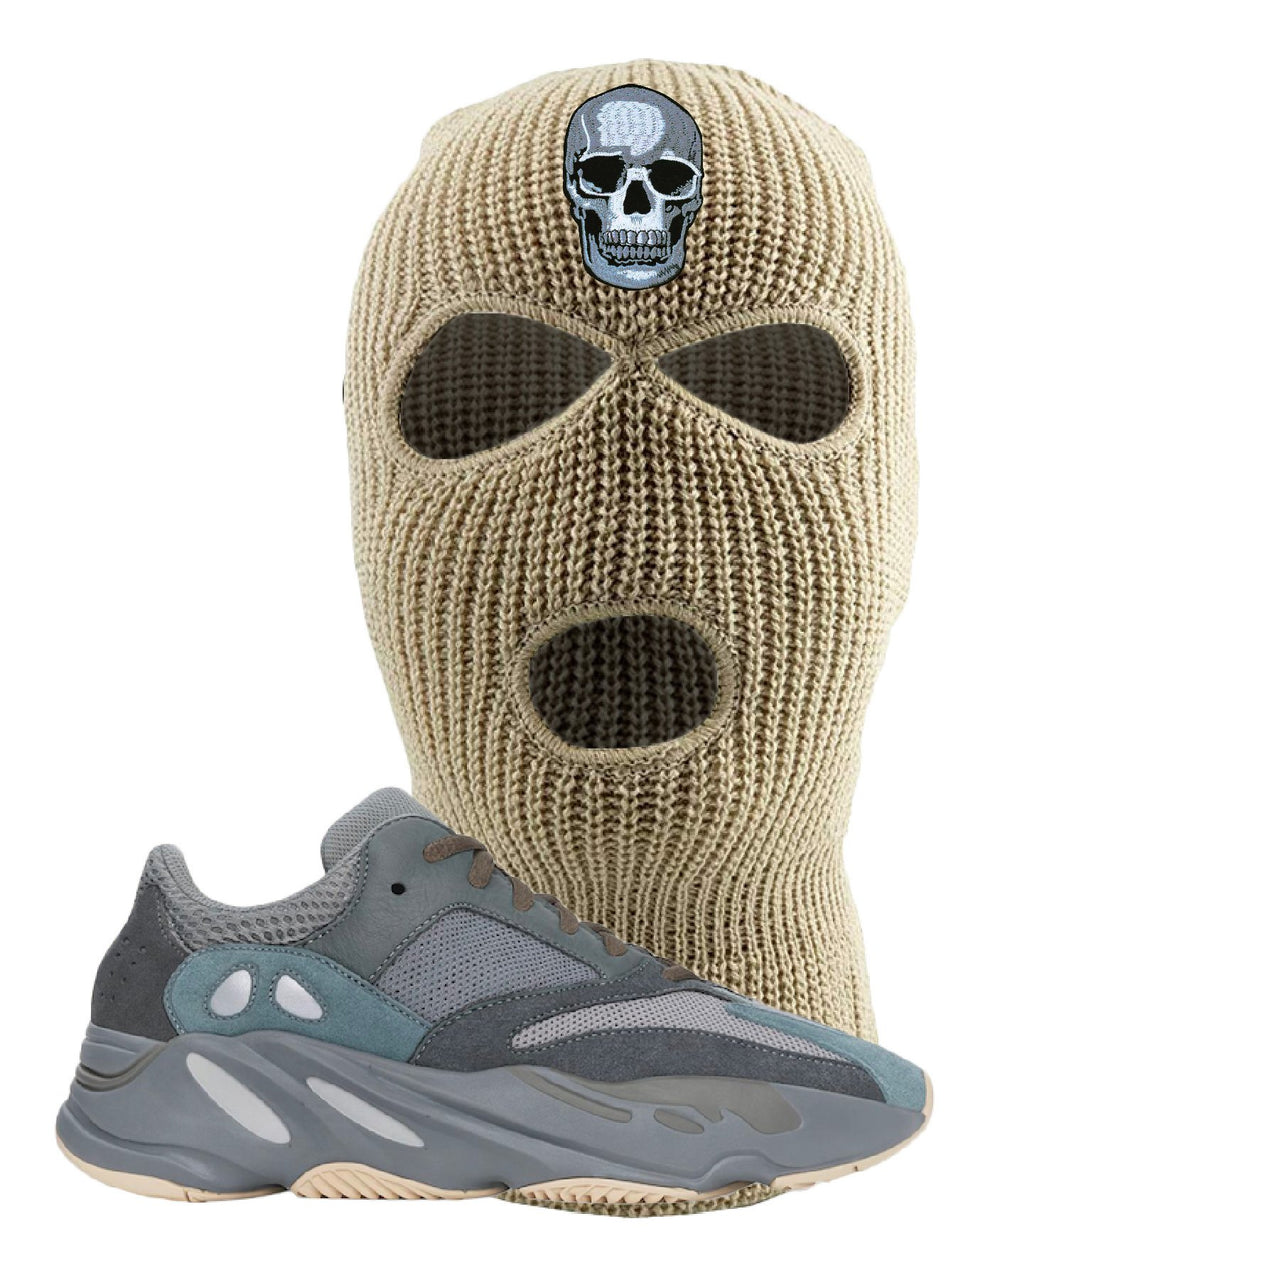 Yeezy Boost 700 Teal Blue Skull Khaki Sneaker Hook Up Ski Mask